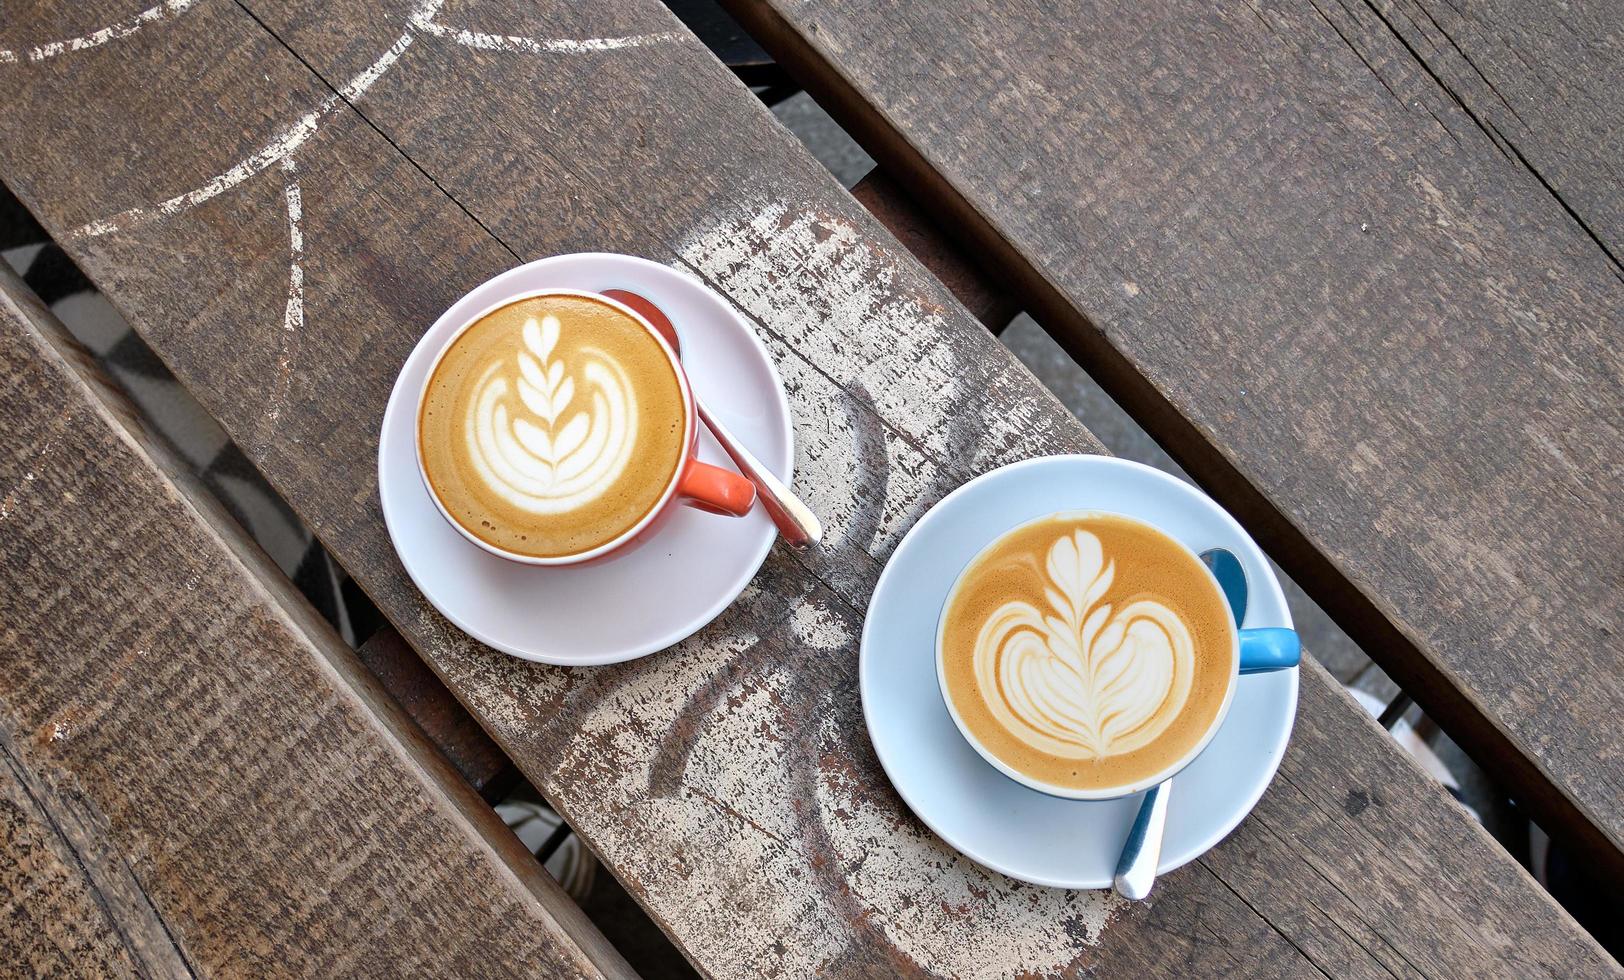 tomada de ângulo elevado de duas xícaras de café com leite em uma superfície de madeira foto